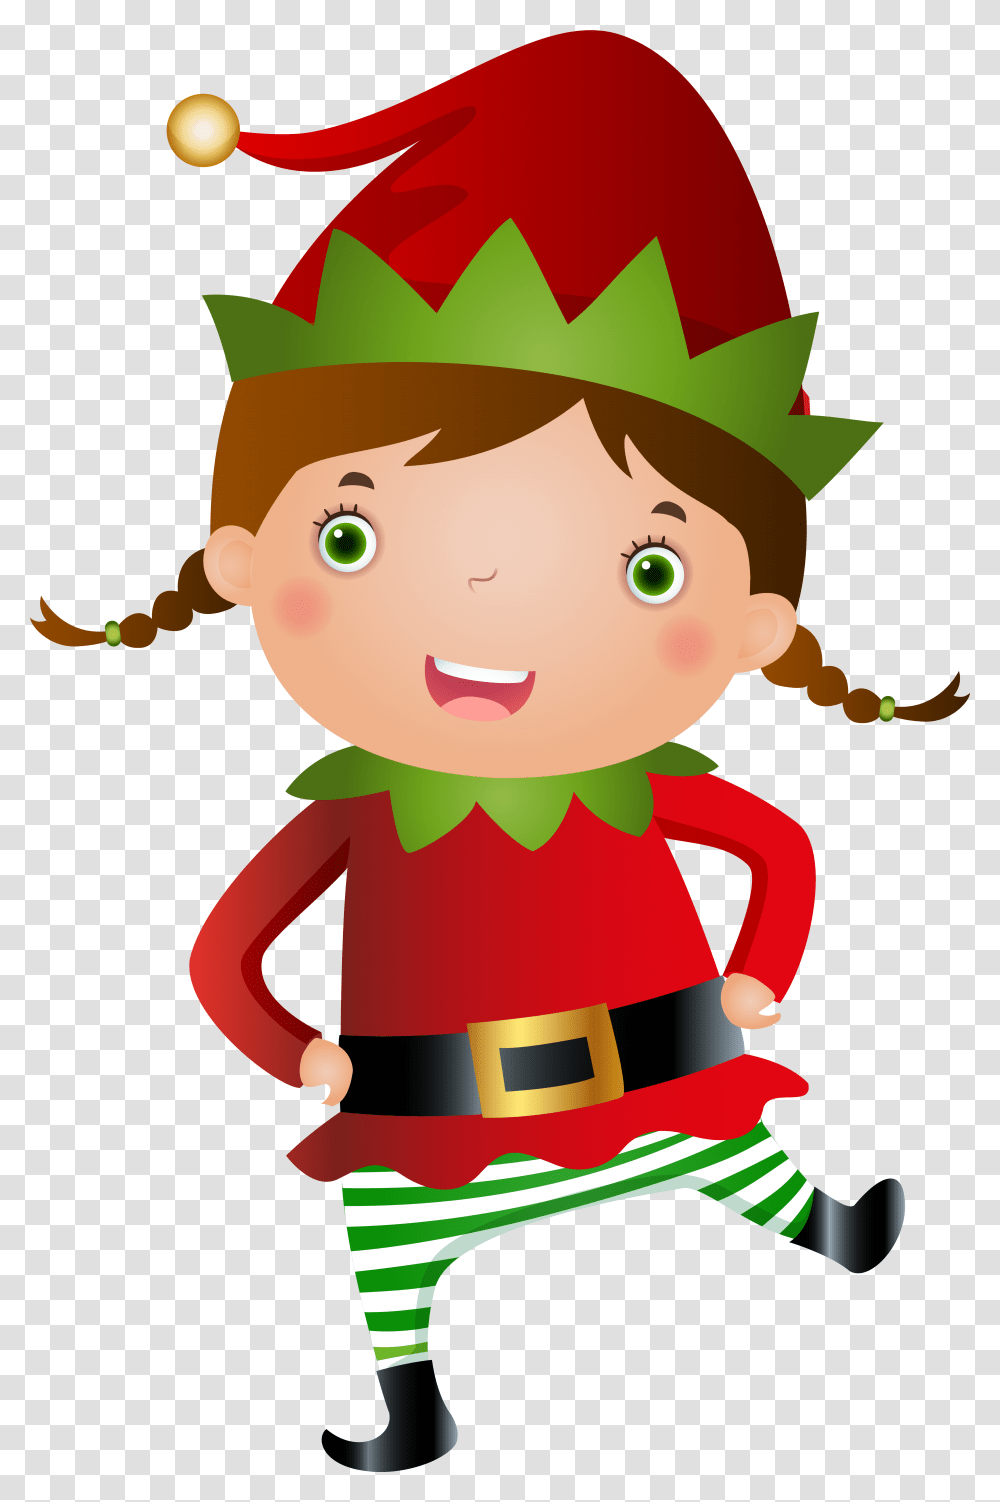 Elves Elf Images Free Download Elf Girl Clipart, Doll, Toy, Apparel Transparent Png